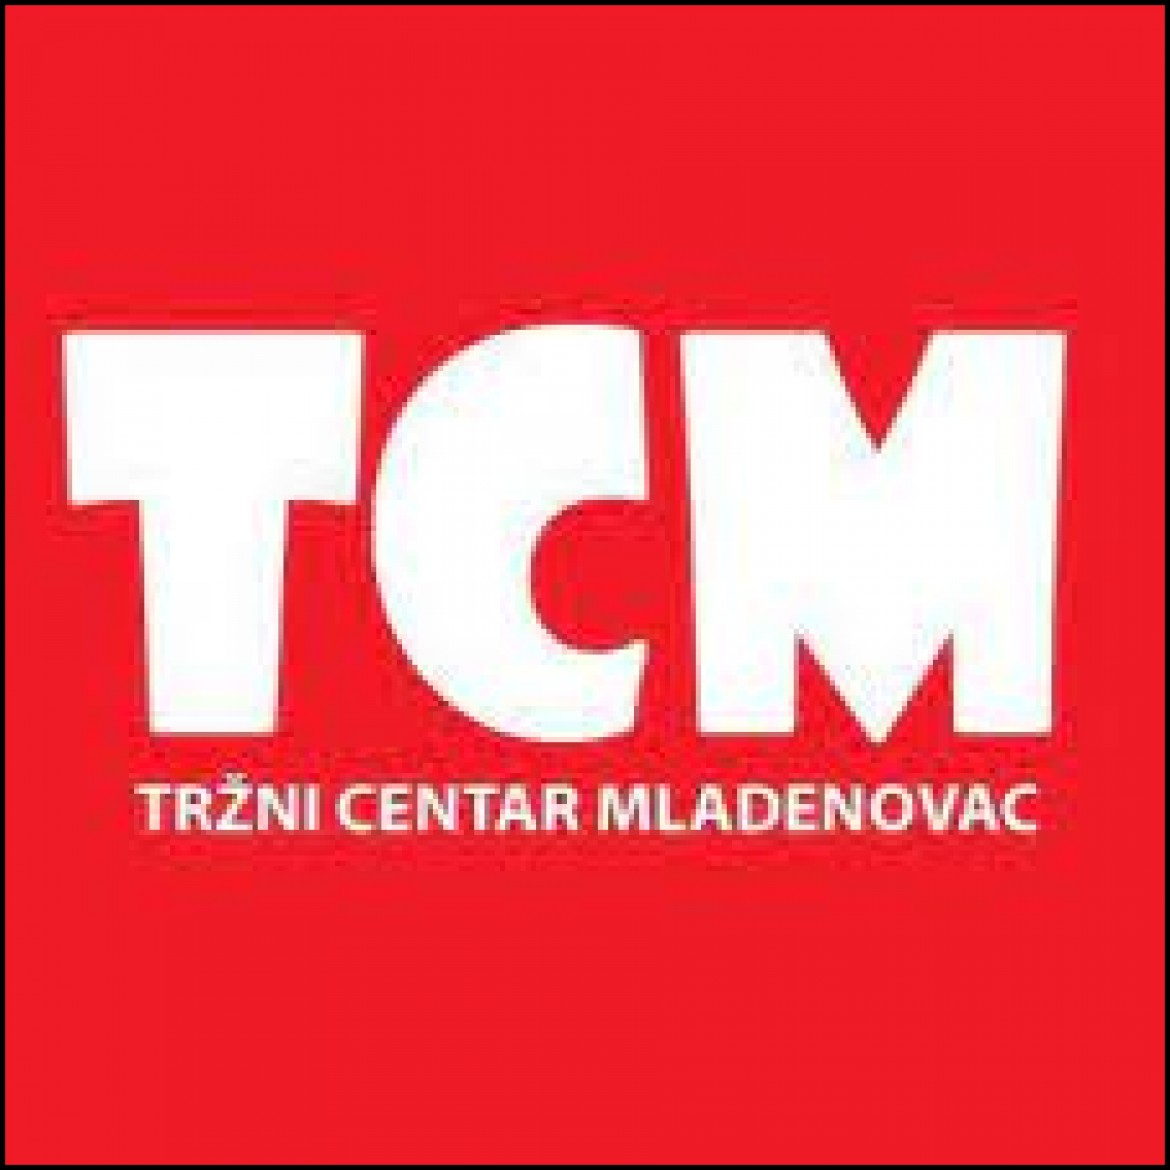 Construction of Mladenovac TCM Shopping Center 2